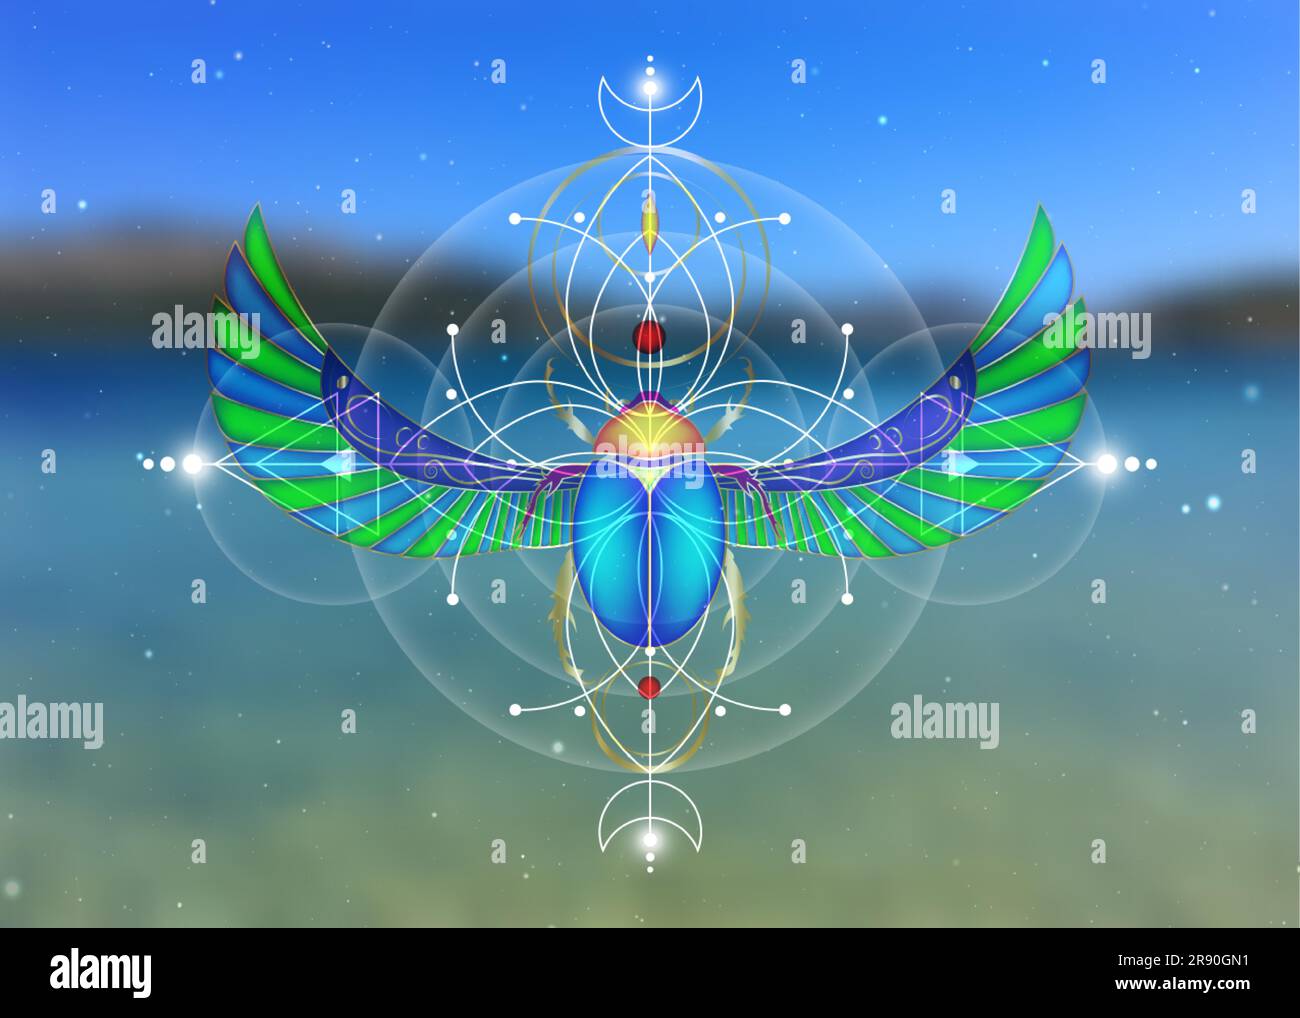 Heilige Geometrie, Scarab-Käfer auf der Blume des Lebens, mystische Zeichnung von Kreisen, Dreiecken, Mond, Energieschema. Symbole der Alchemie, Magie, Esoterie, Stock Vektor